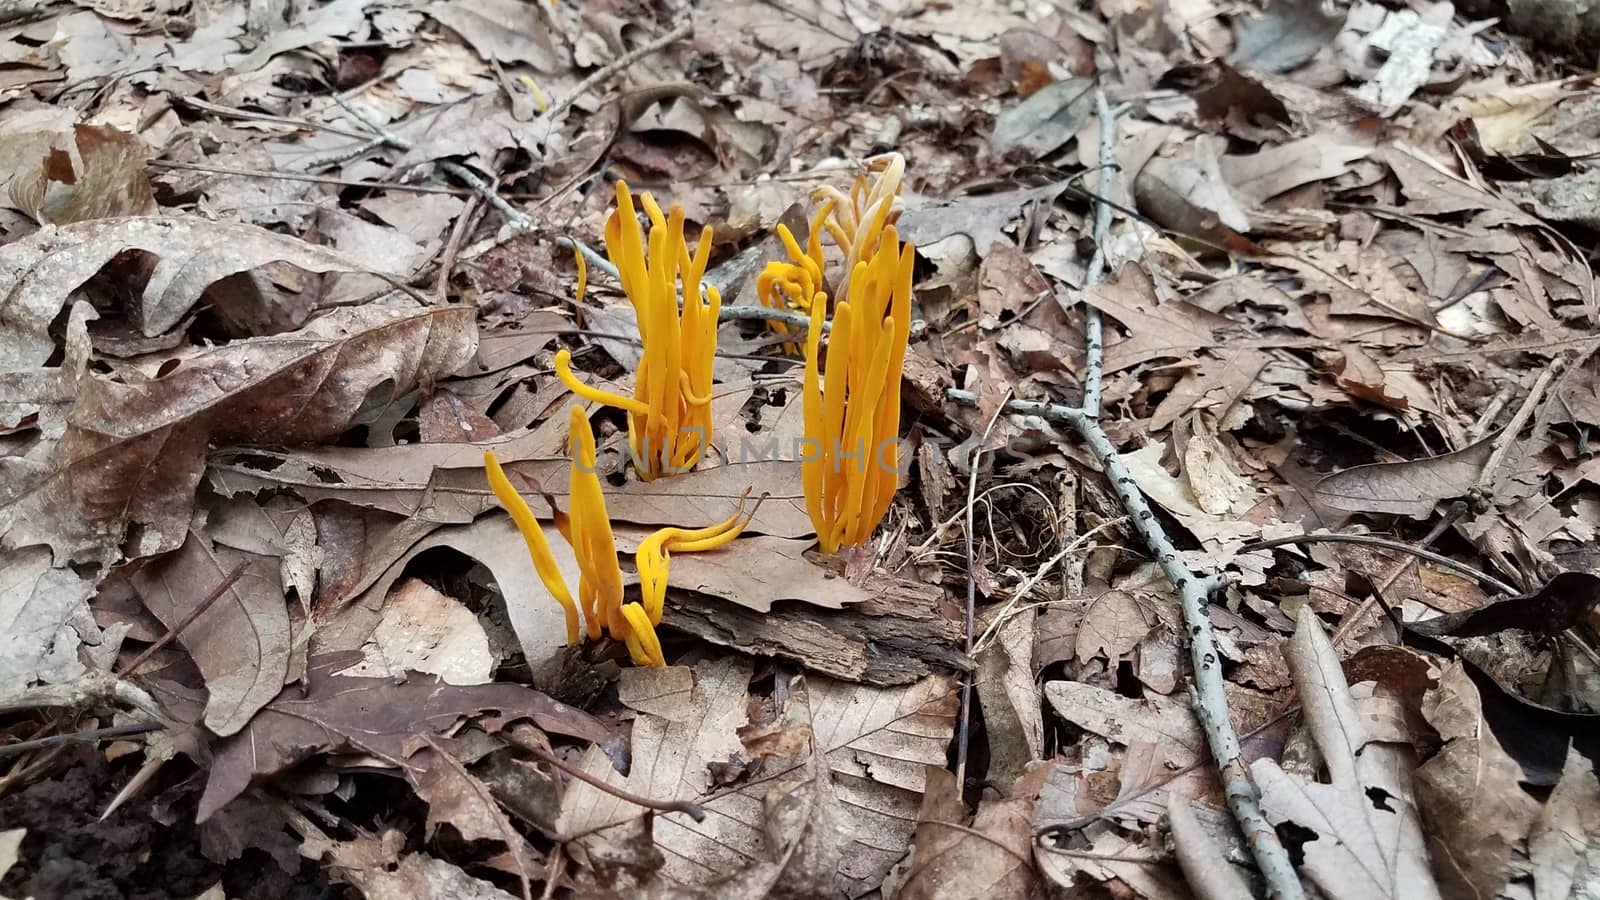 orange mushroom or fungus growing in brown leaves in forest or woods